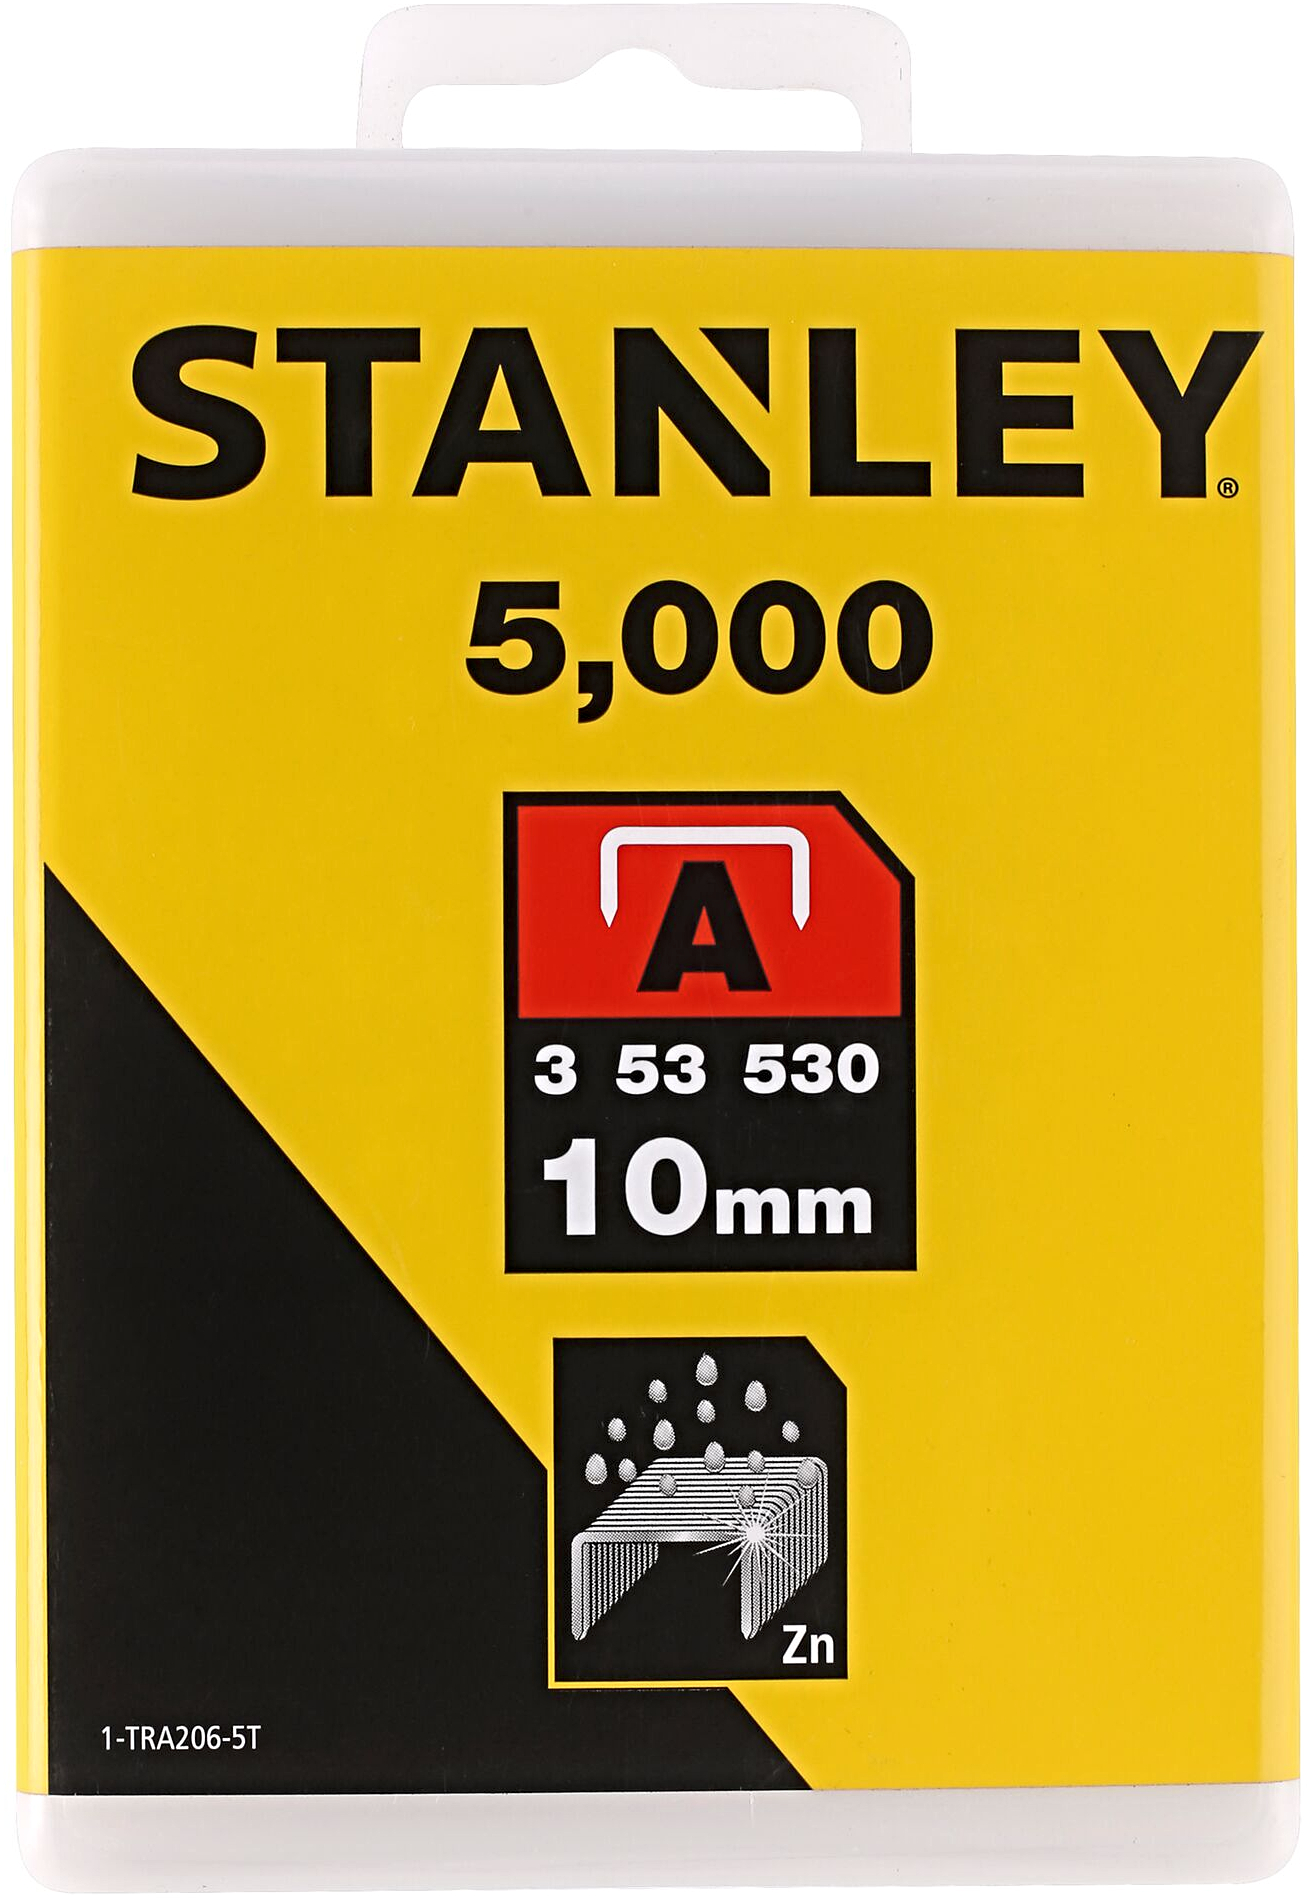 STANLEY 1-TRA206-5T spony LD typ A - 11,3 mm, délka 10 mm, balení 5000 ks